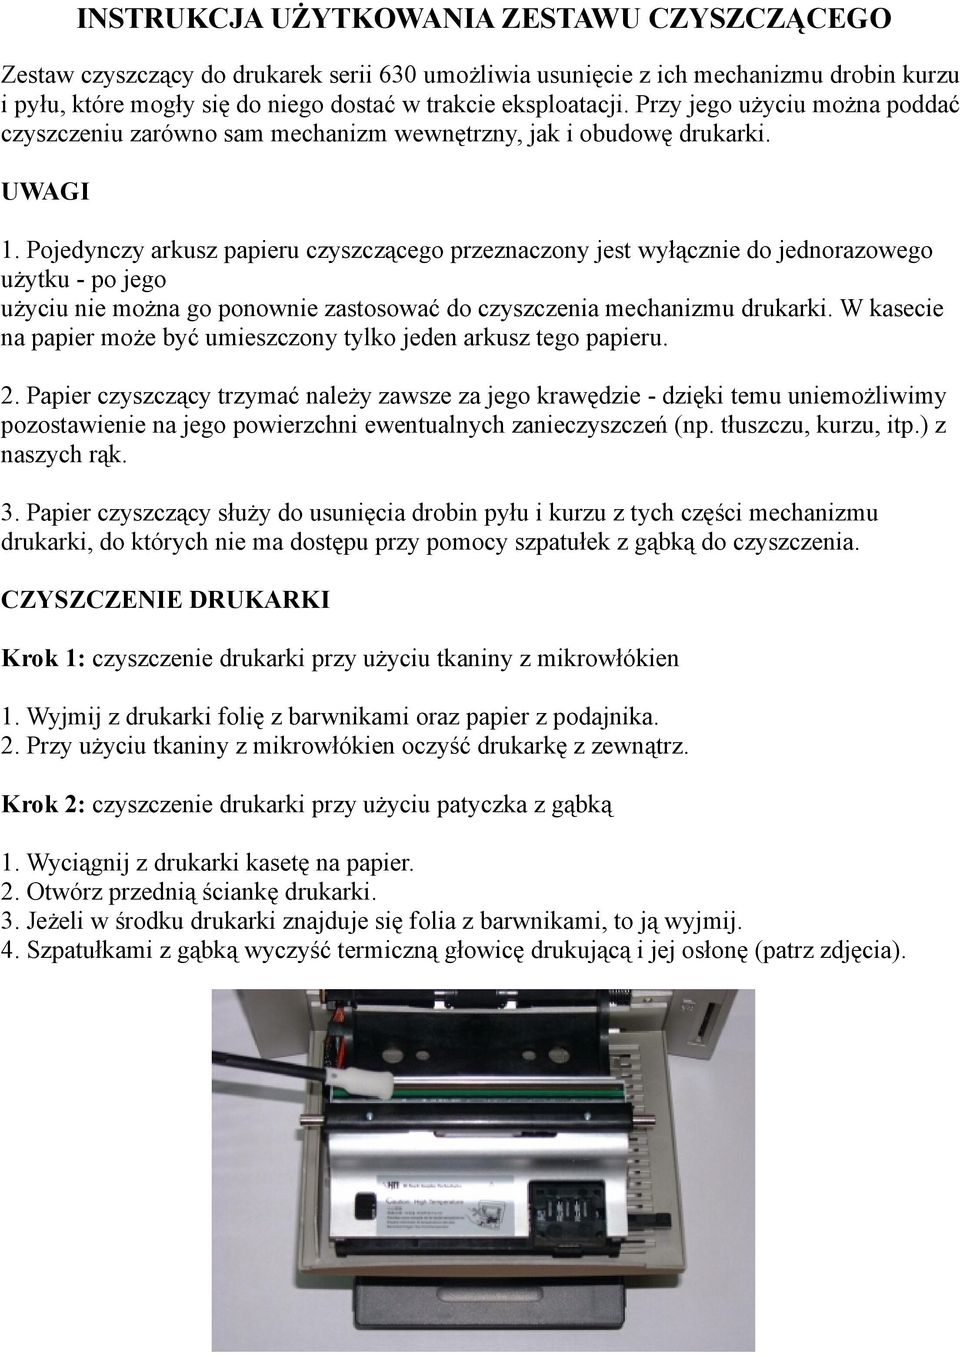 Pojedynczy arkusz papieru czyszczącego przeznaczony jest wyłącznie do jednorazowego użytku - po jego użyciu nie można go ponownie zastosować do czyszczenia mechanizmu drukarki.